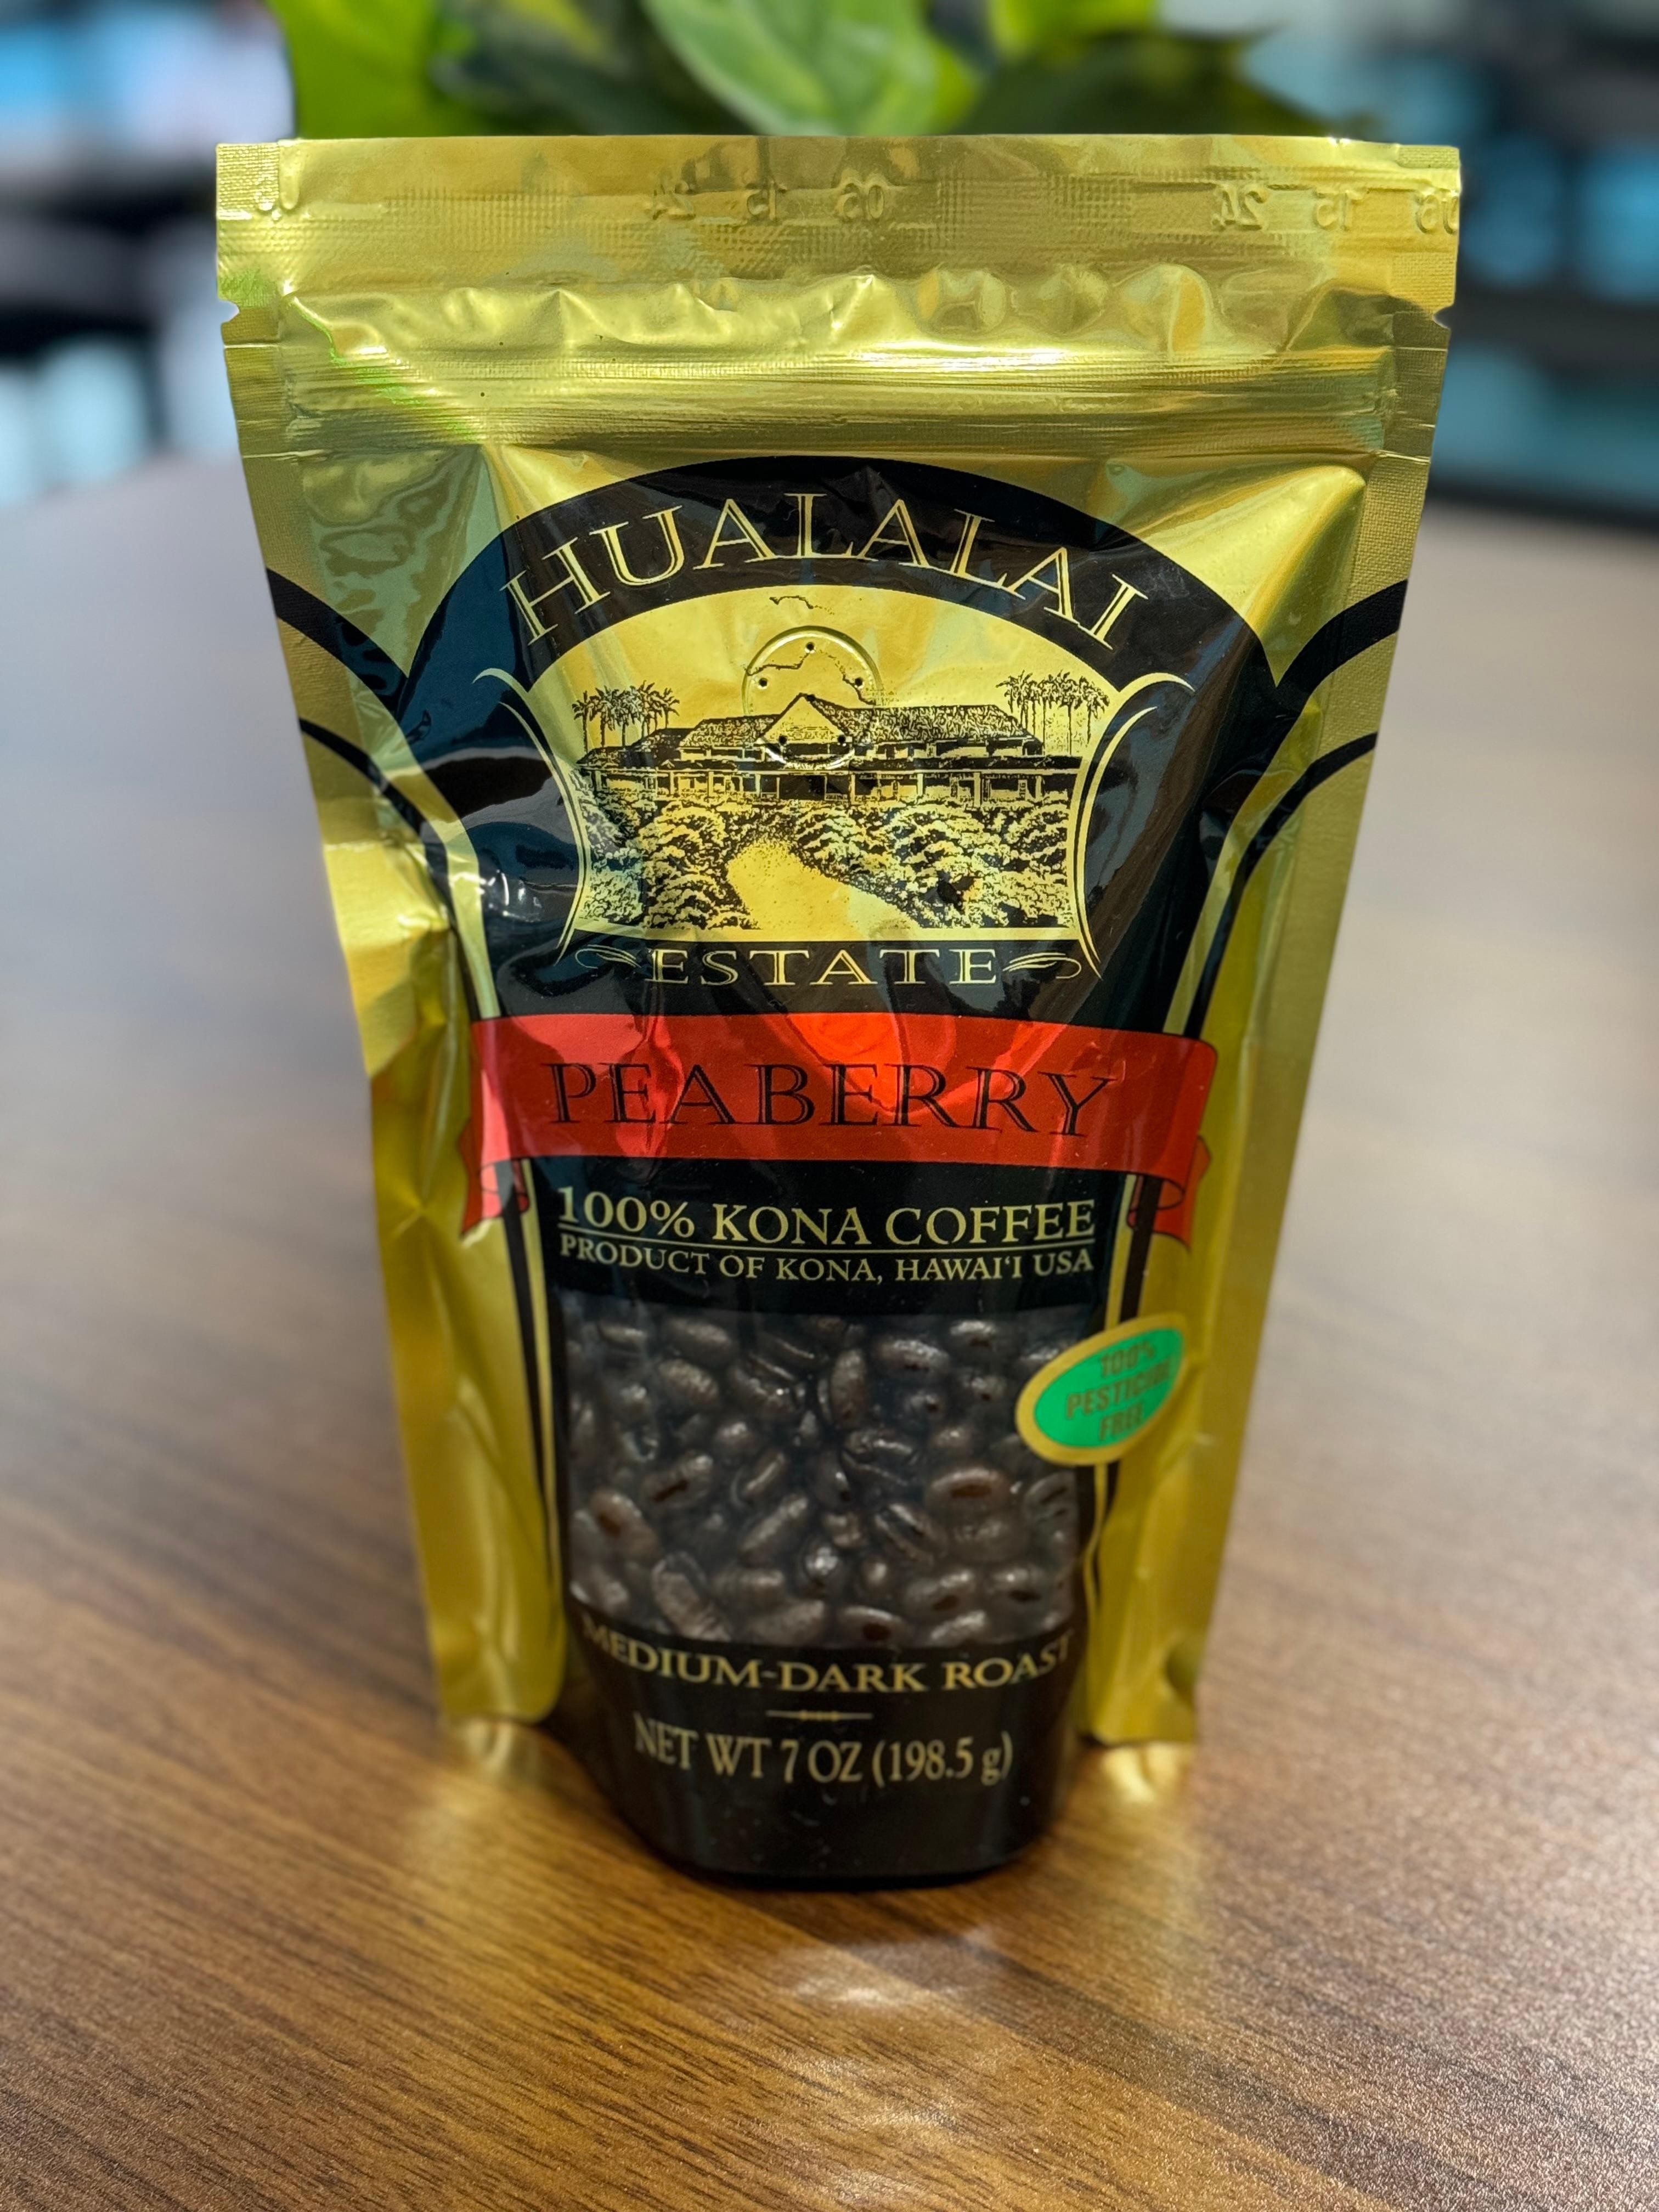 Hualalai Estates Peaberry Coffee, 7 oz